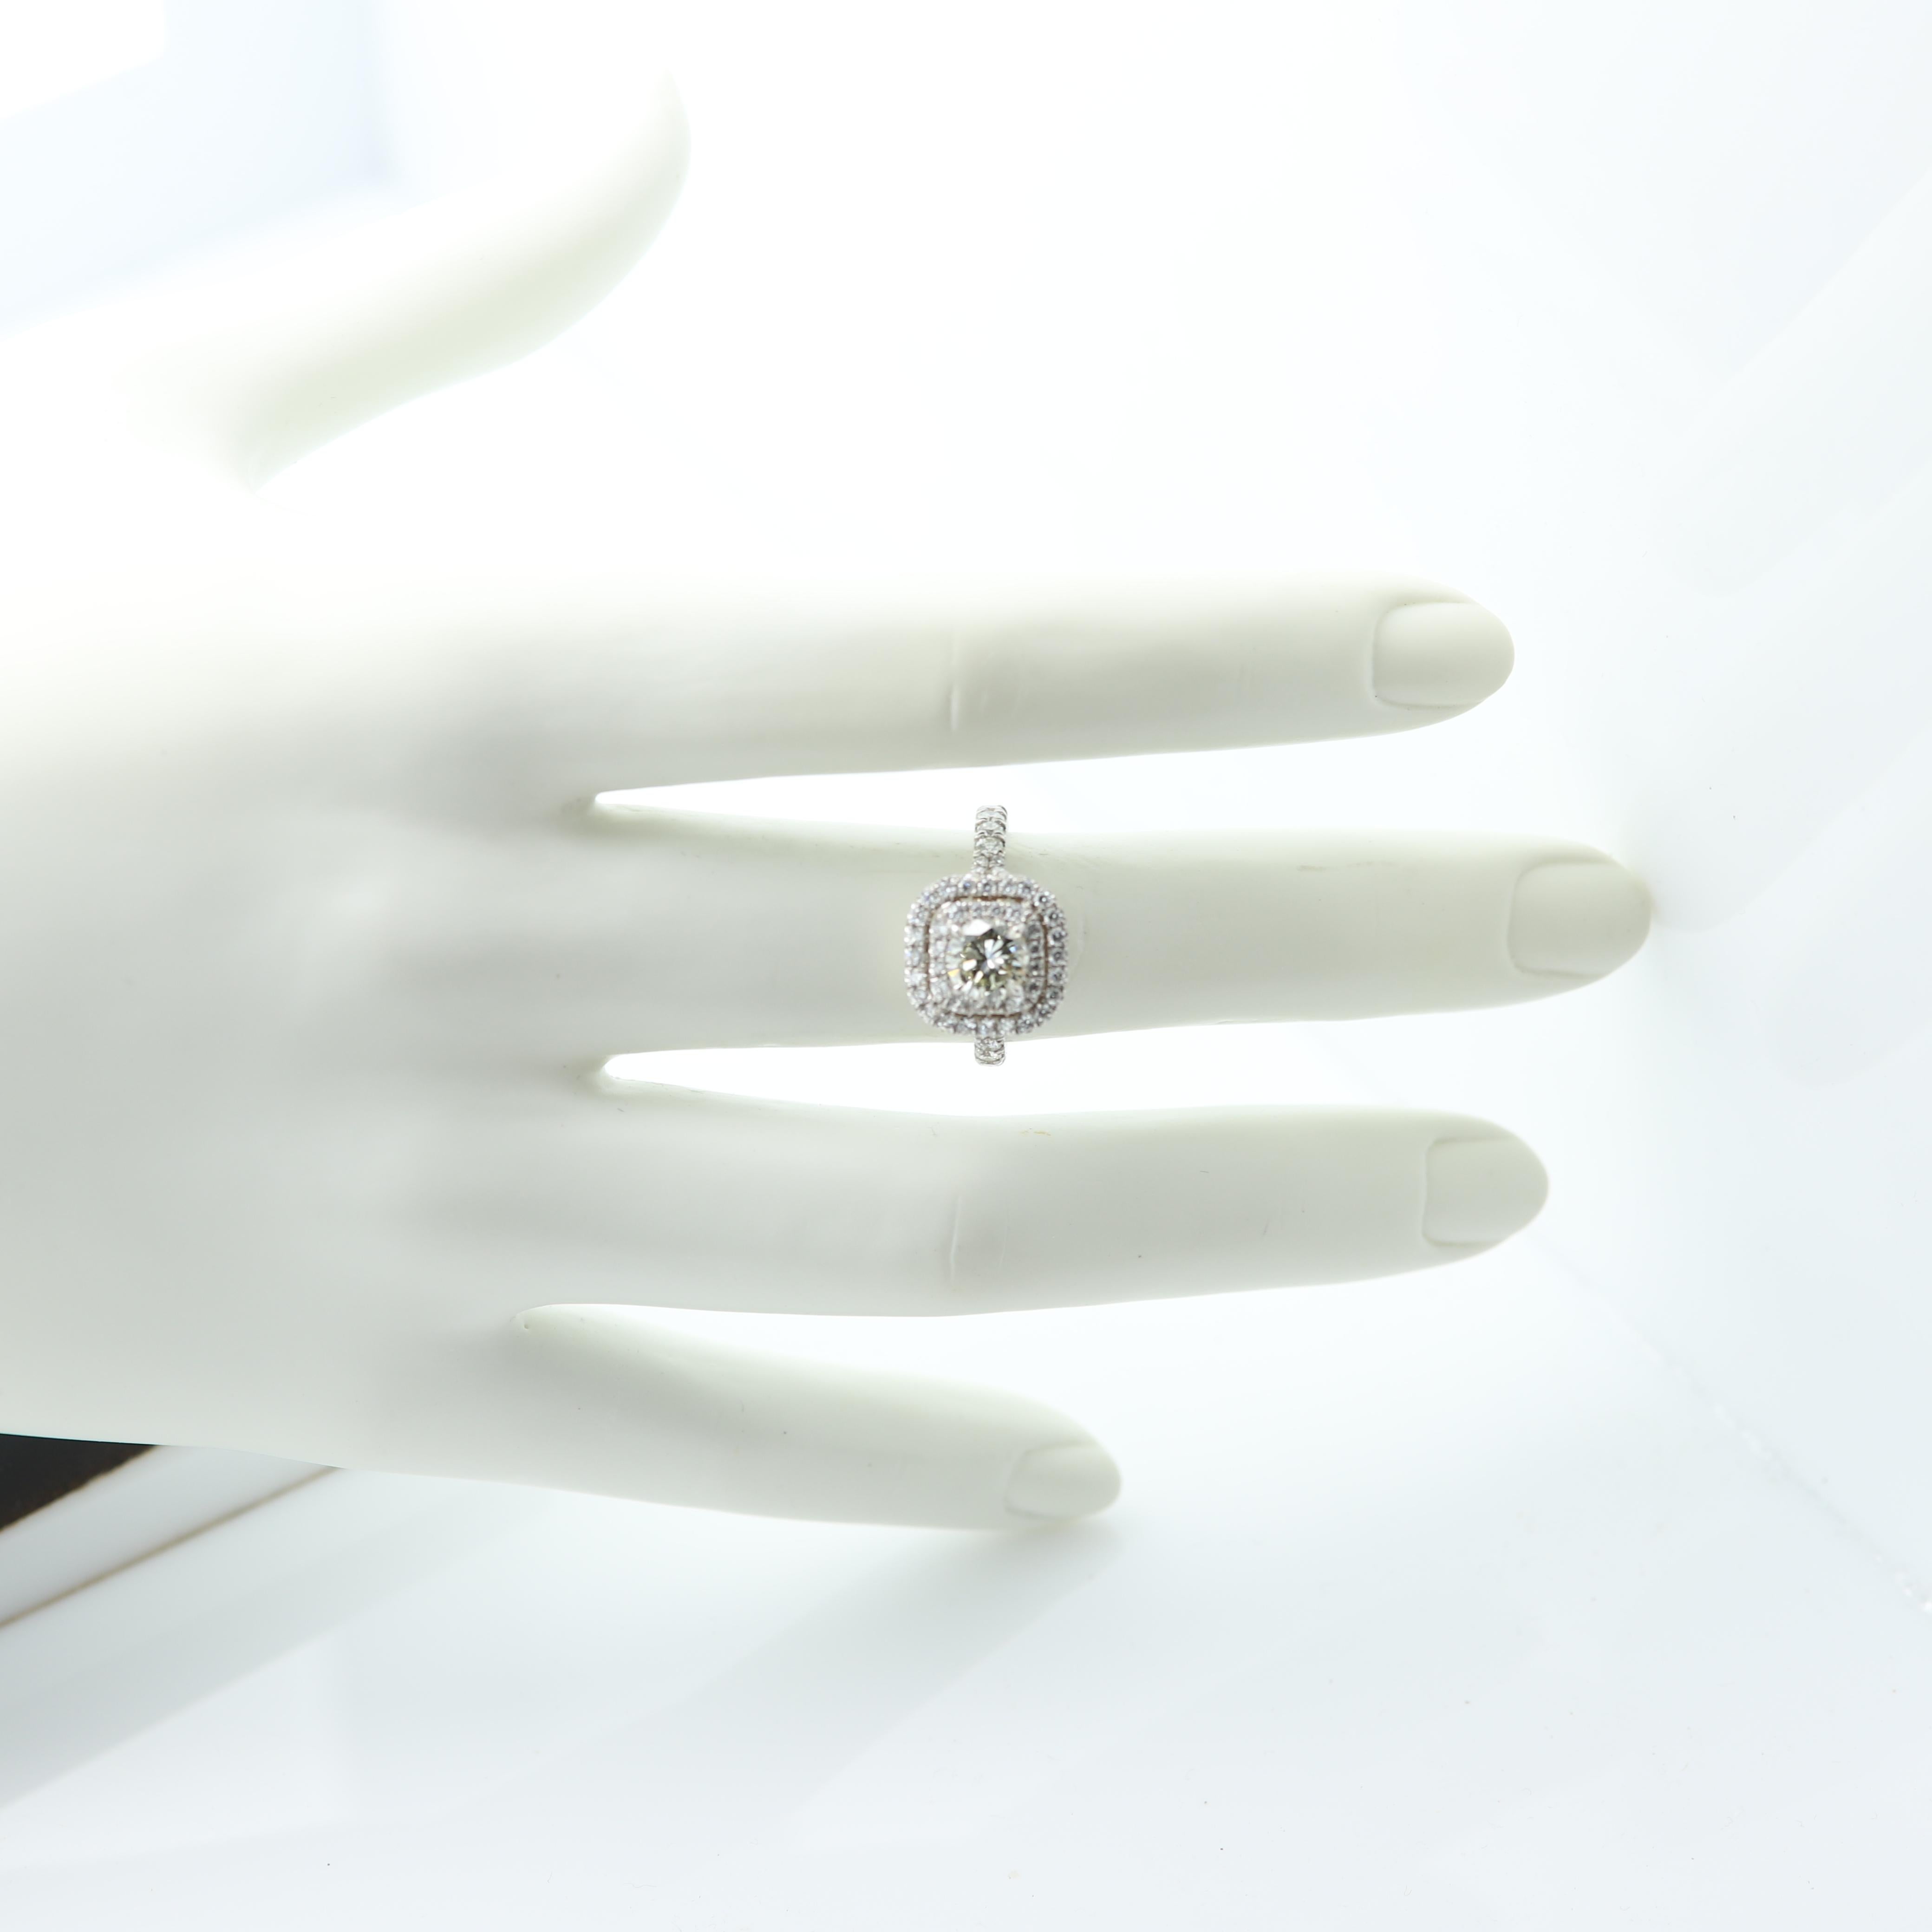 Women's Cluster Diamond Ring 18 Karat White Gold Center Diamond 1.01 Carat For Sale